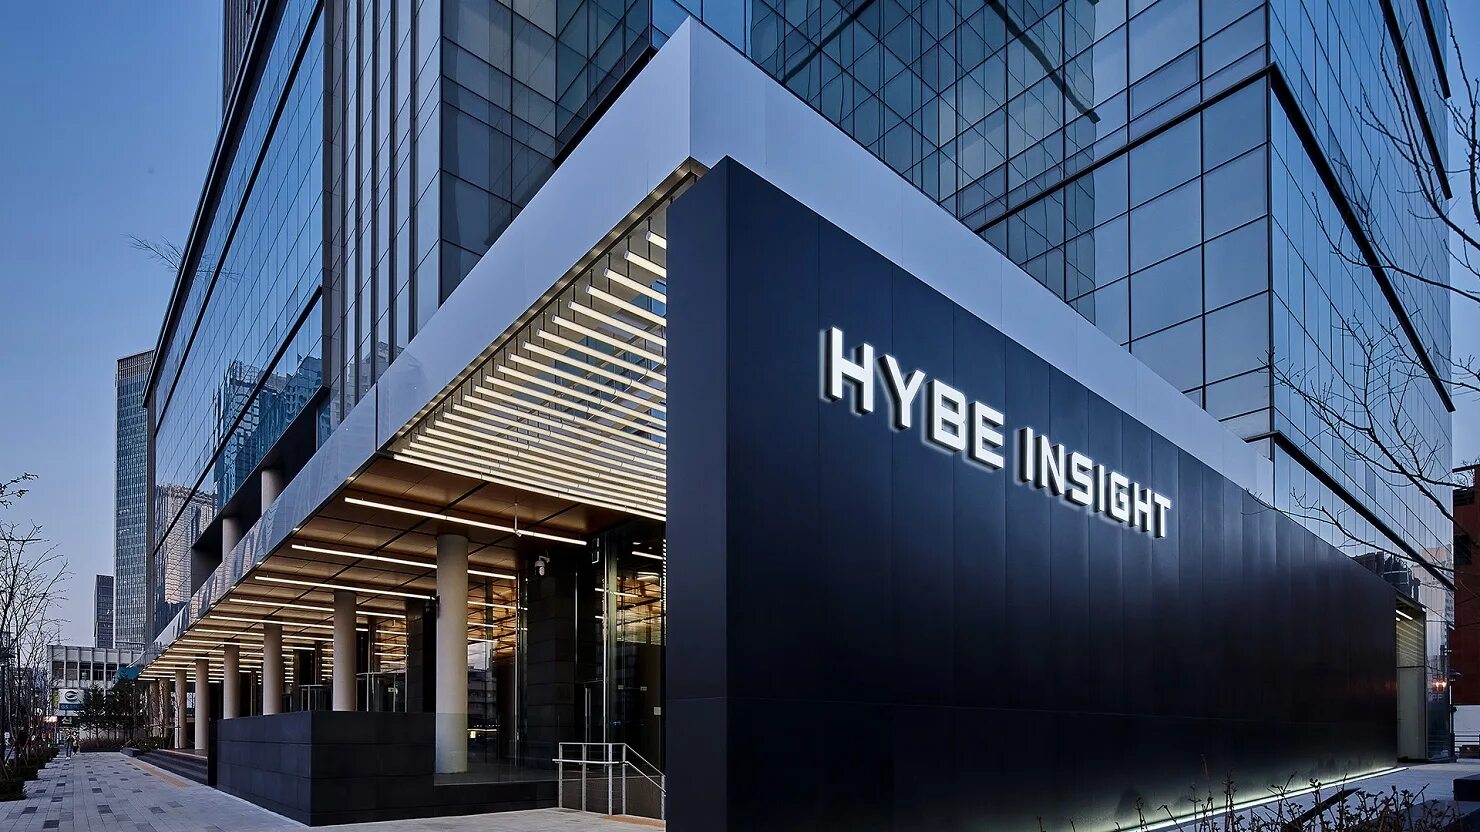 Хайб интертеймент. Музей hybe BTS. Сеул здание hybe. Hybe Insight музей. Компания hybe в Корее.